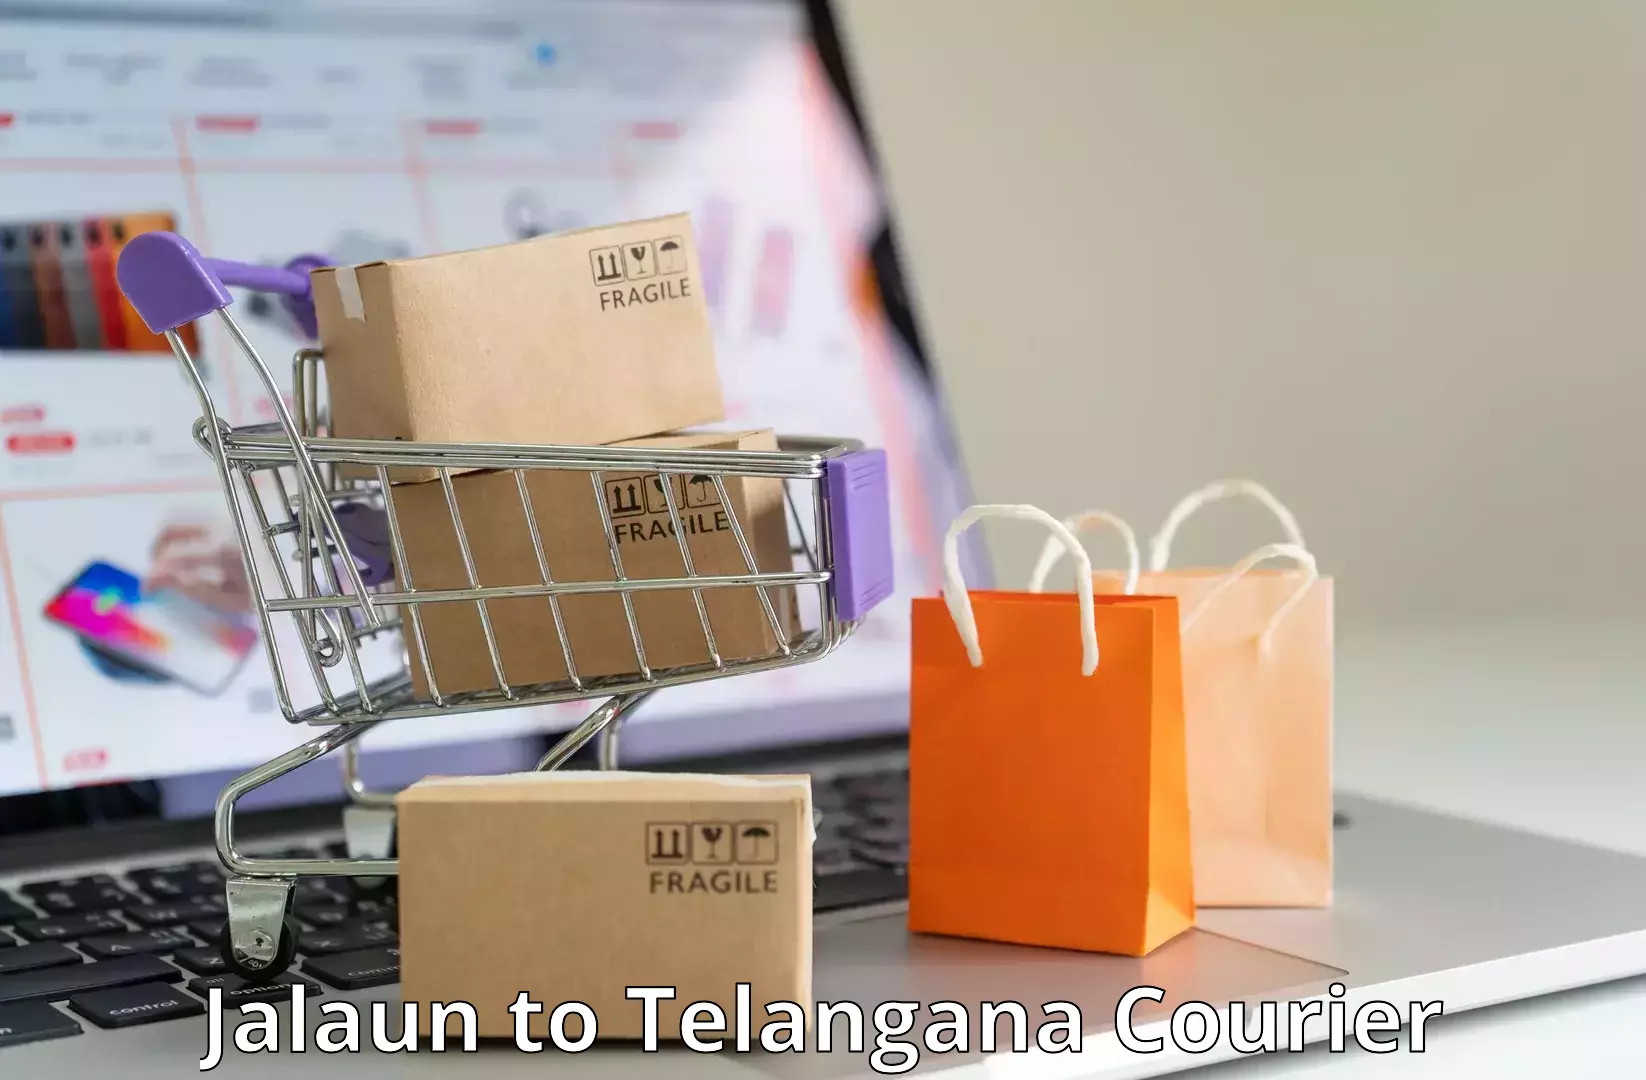 Courier service comparison Jalaun to Ghatkesar